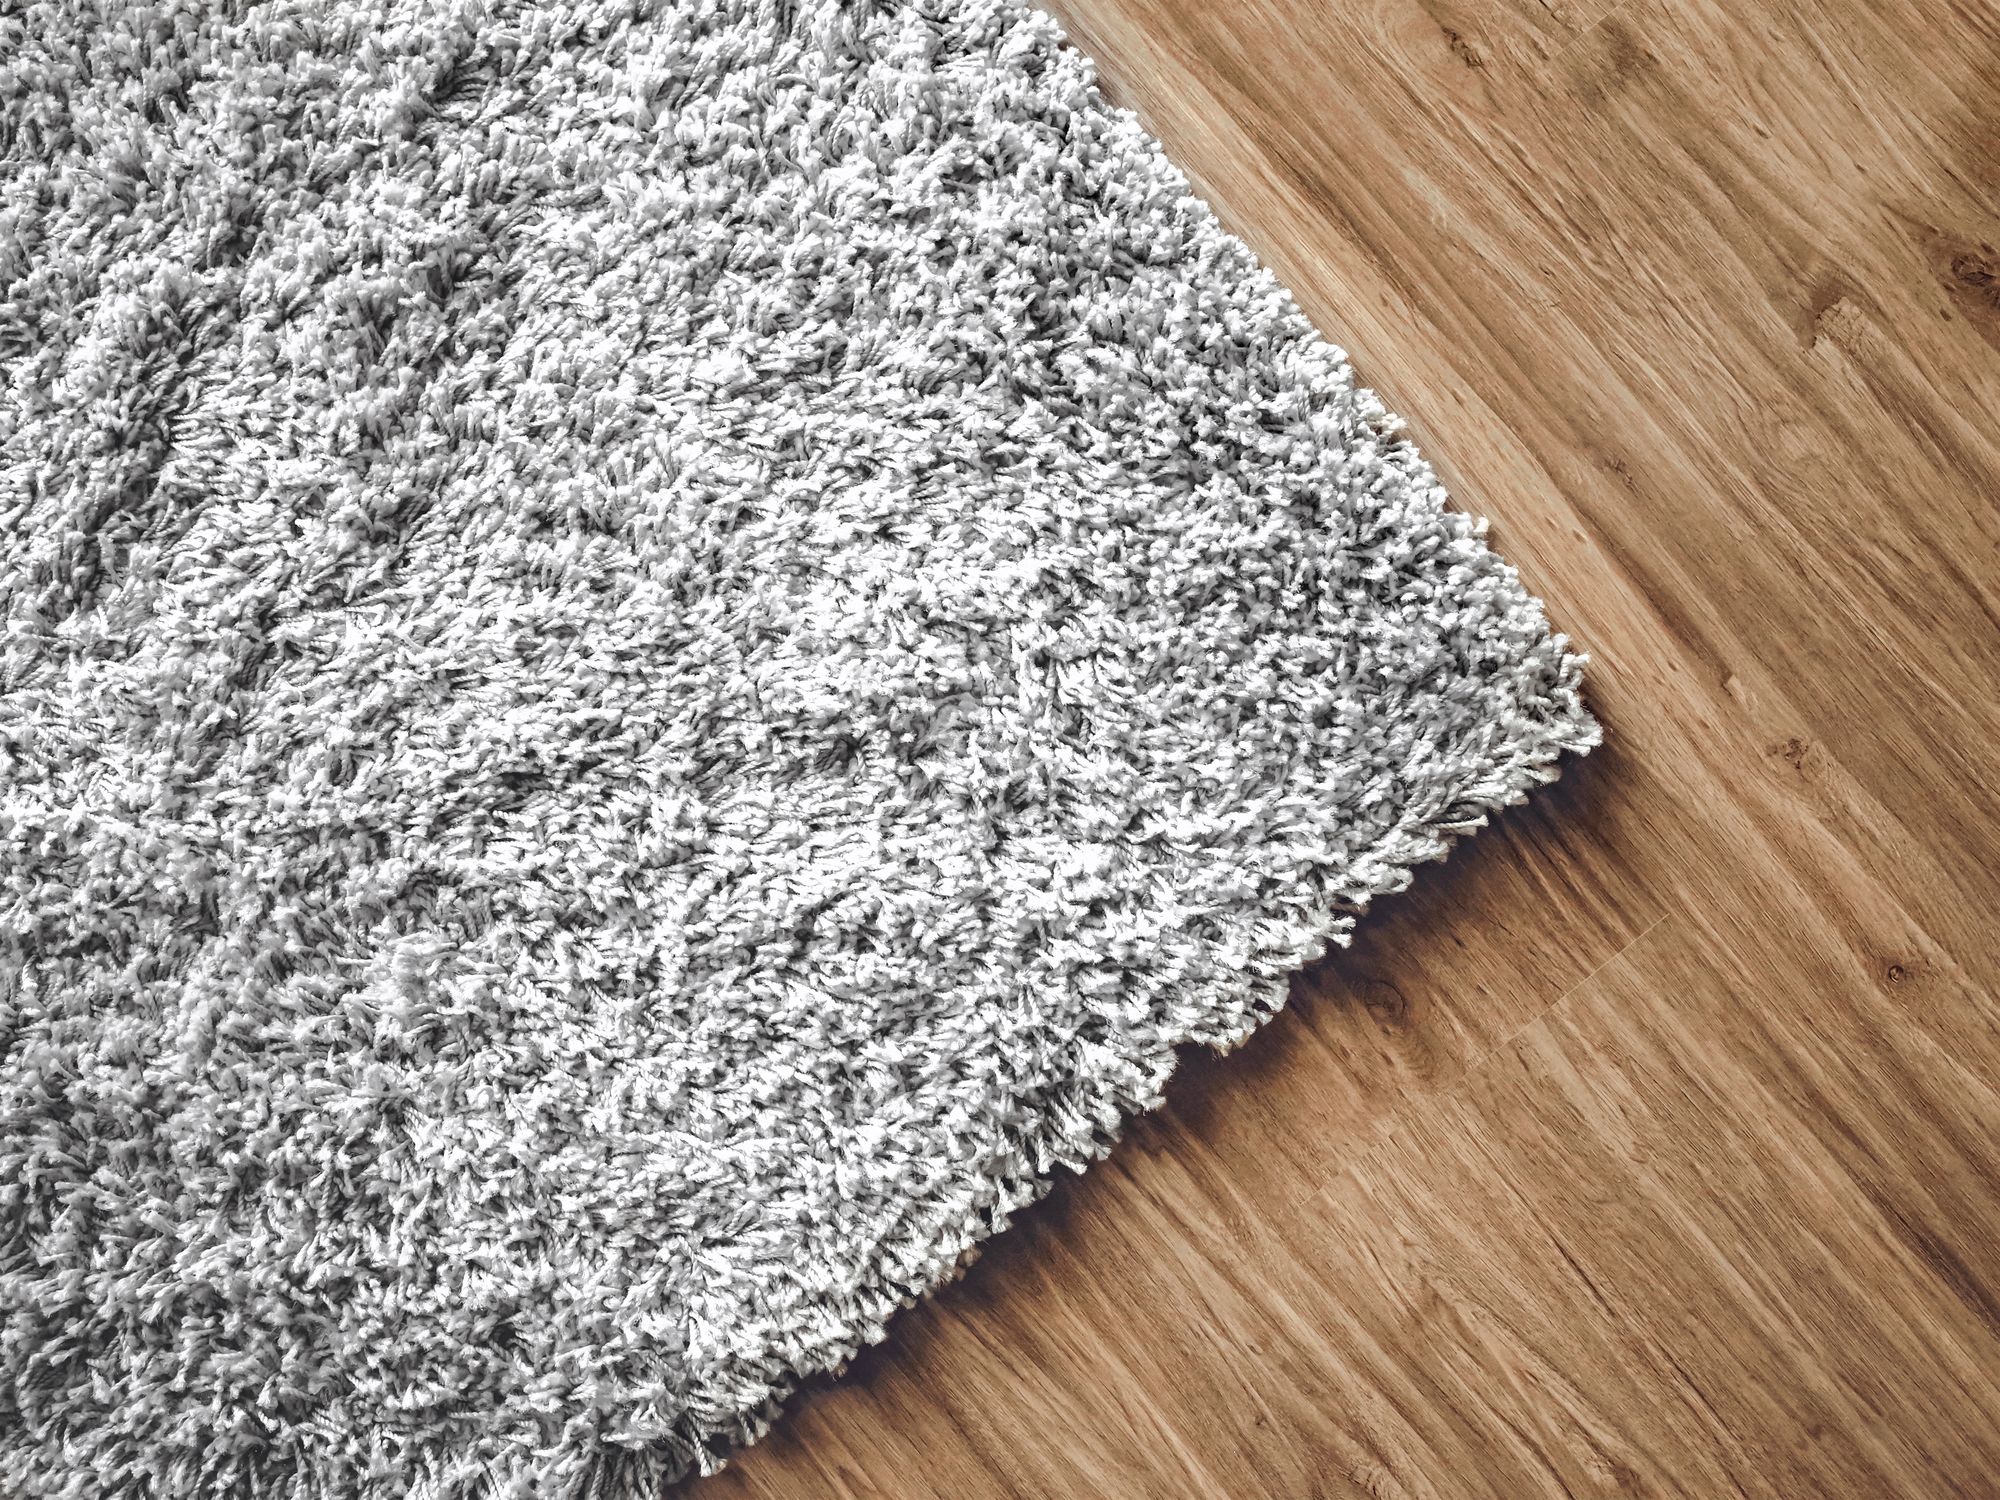 Kaugummi entfernen aus dem Teppich